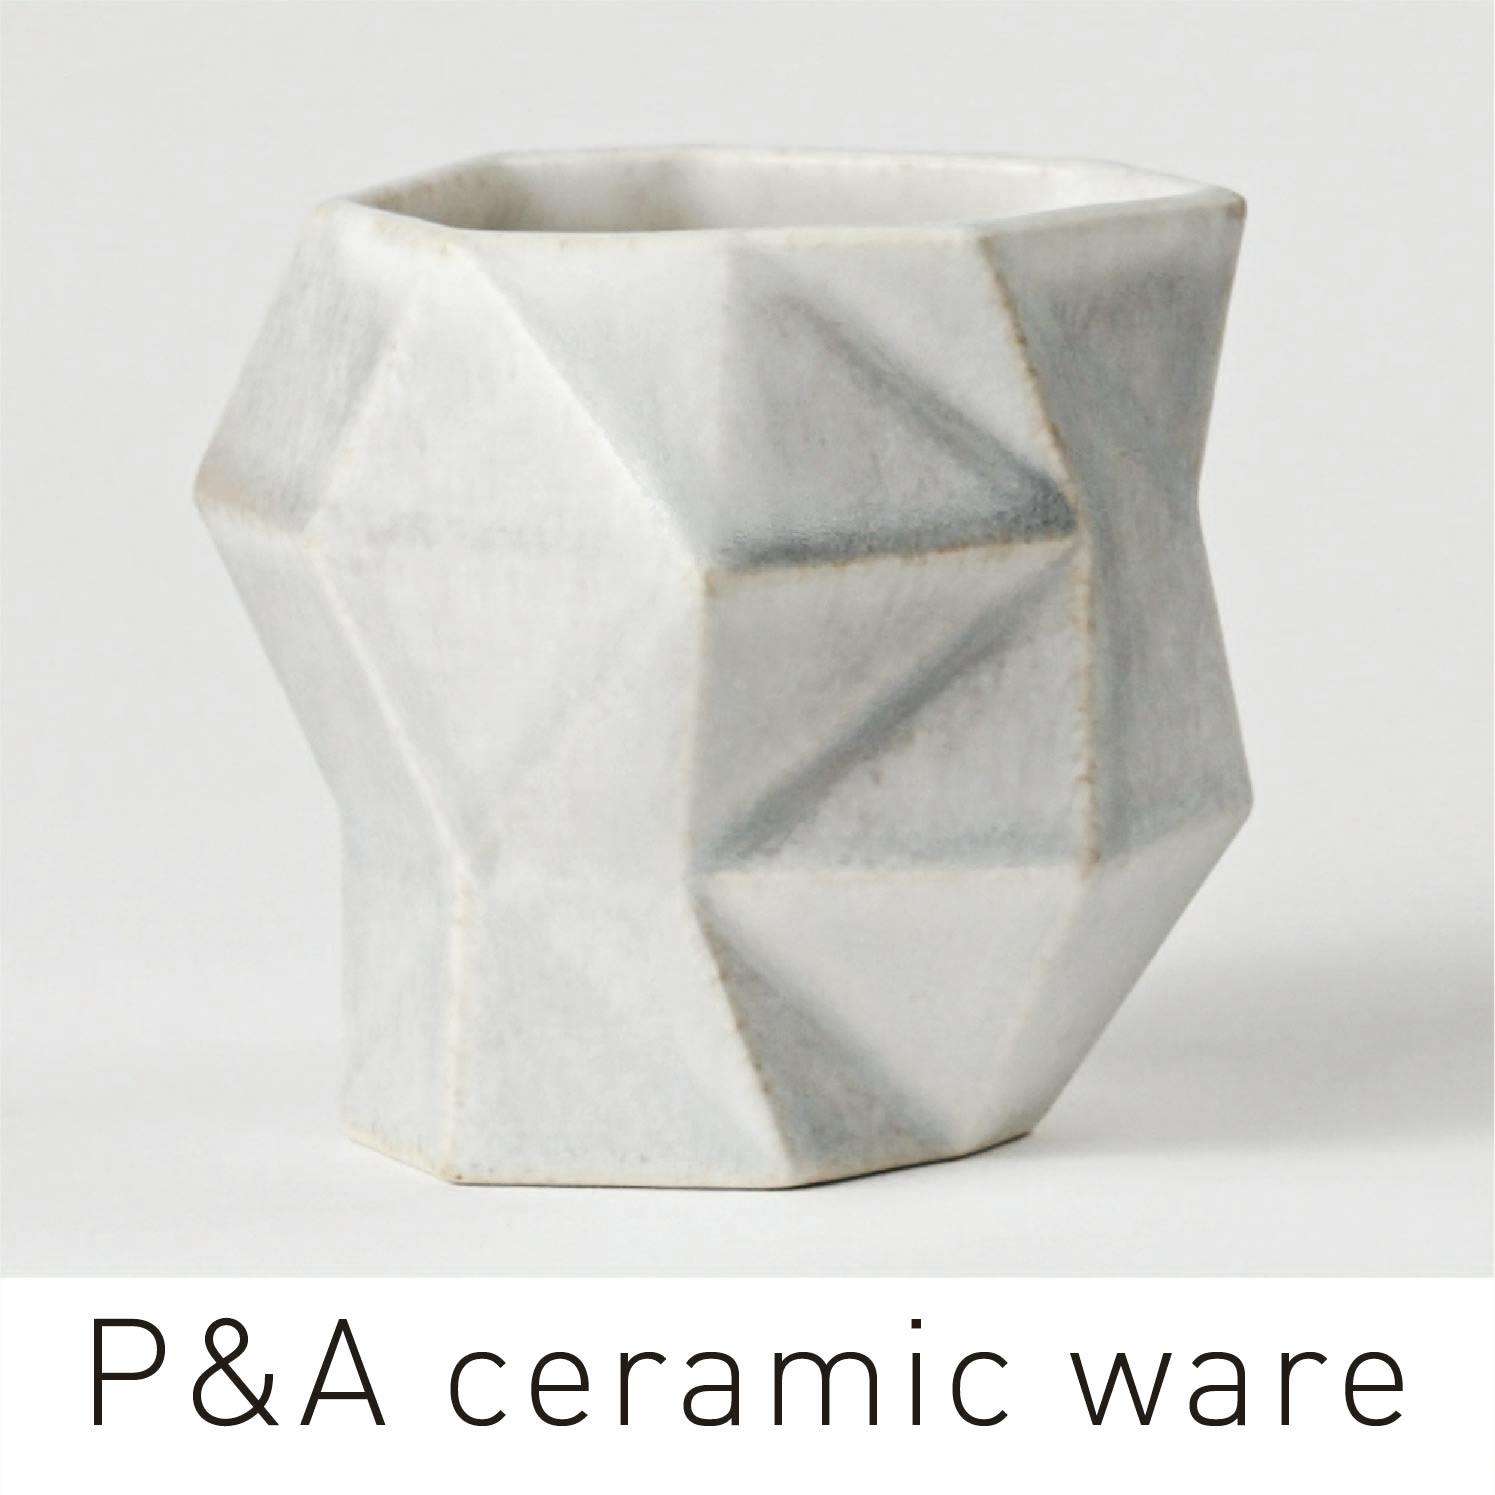 P&A ceramic ware